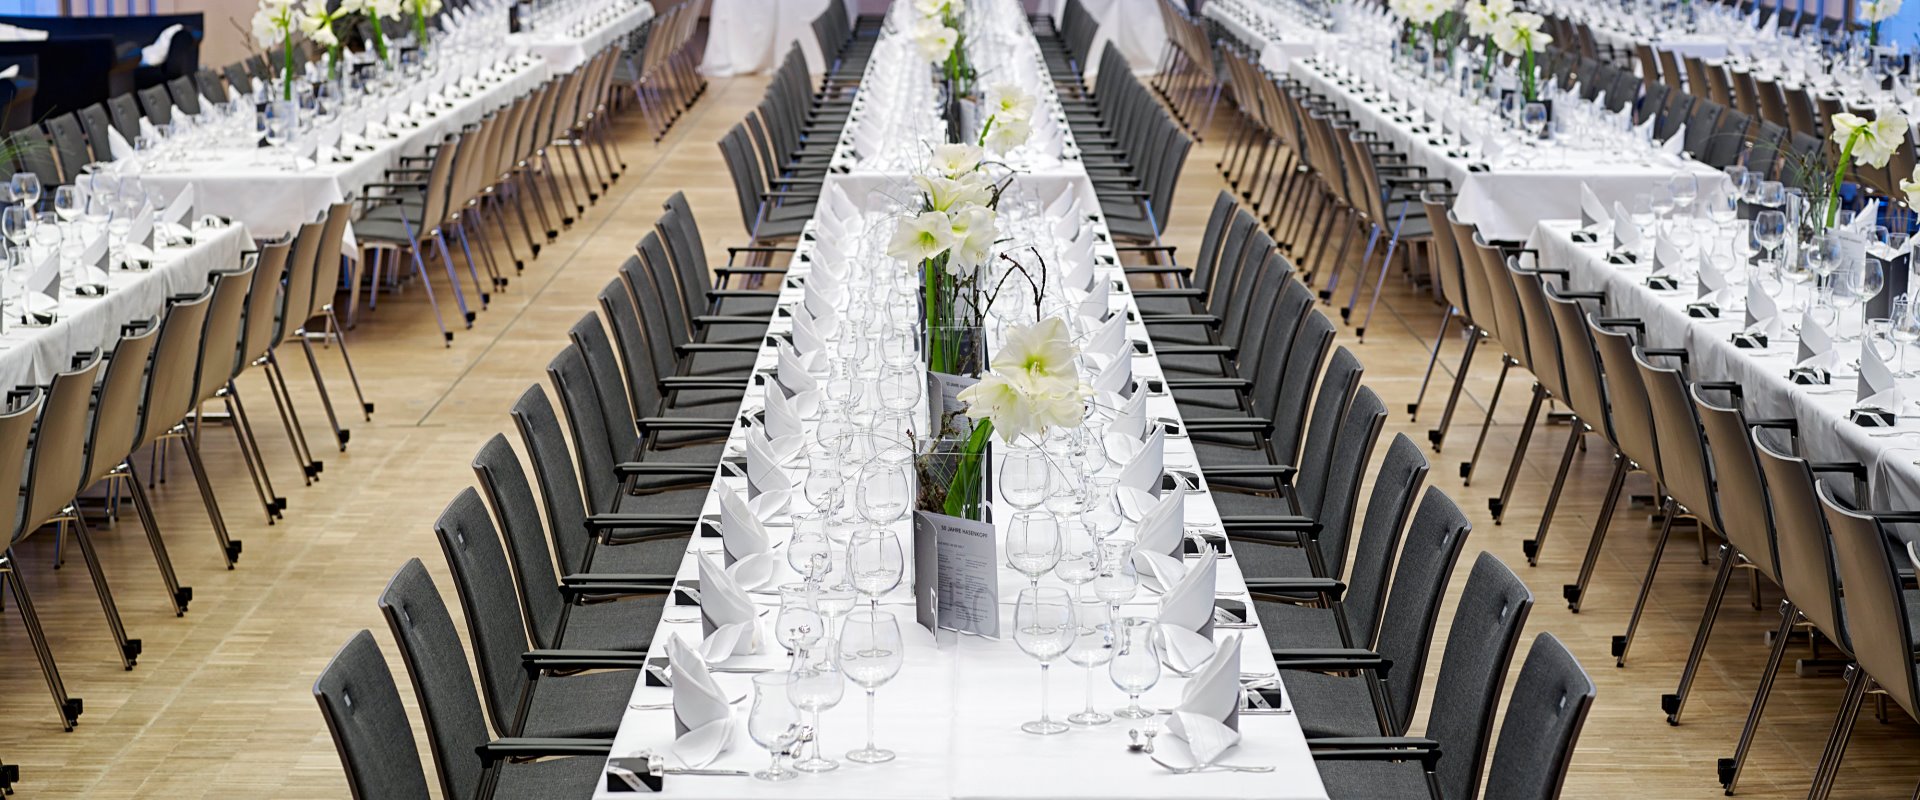 Raiffeisen-Saal Catering Gala eckige Tische eingedeckt mit Dekoration